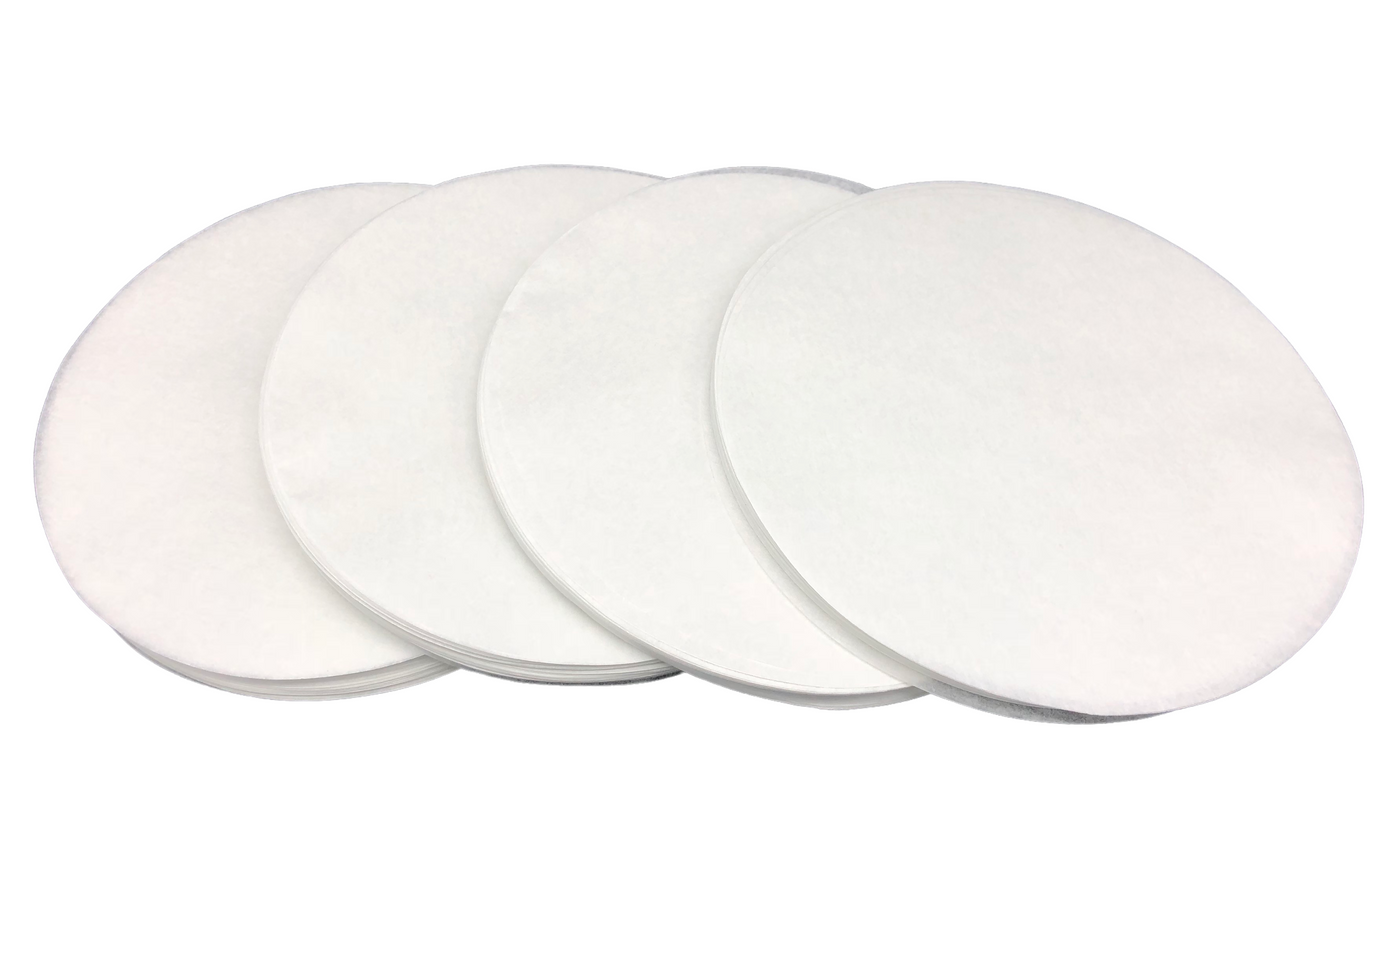 Parchment Paper Rounds